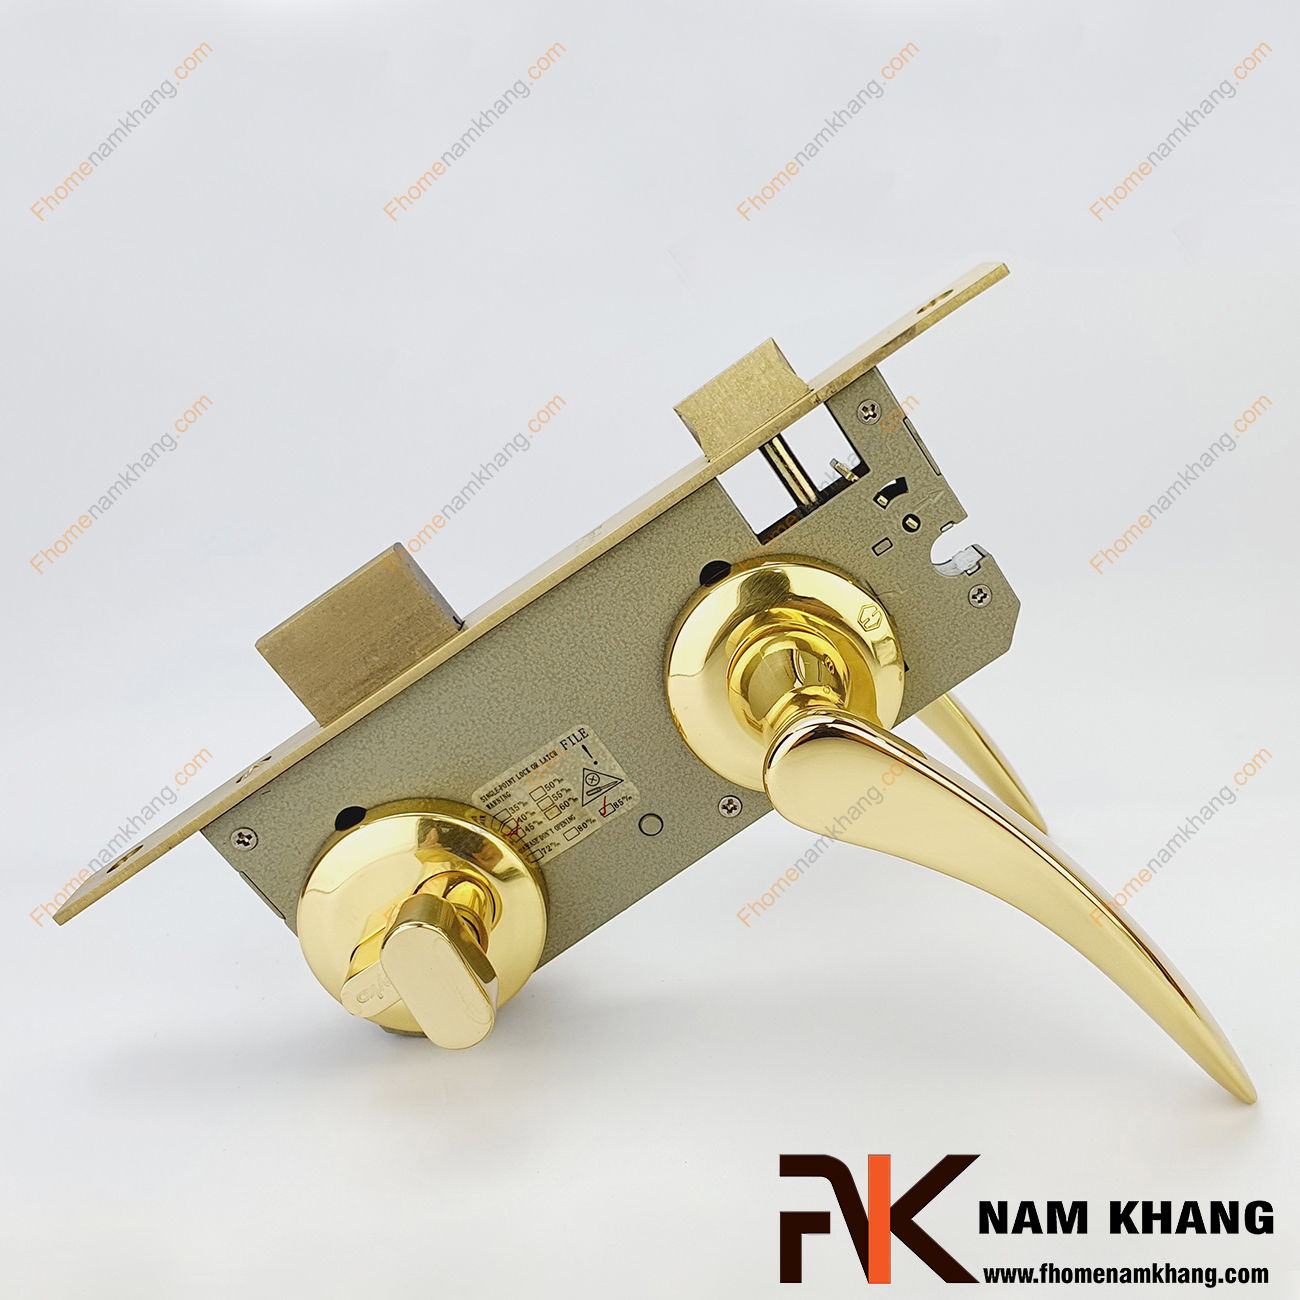 Khóa cửa phân thể bằng đồng cao cấp màu vàng bóng NK550-24K có thiết kế phần ốp khóa và tay gạt riêng biệt, nhỏ gọn và tạo được sự nổi bật độc đáo.